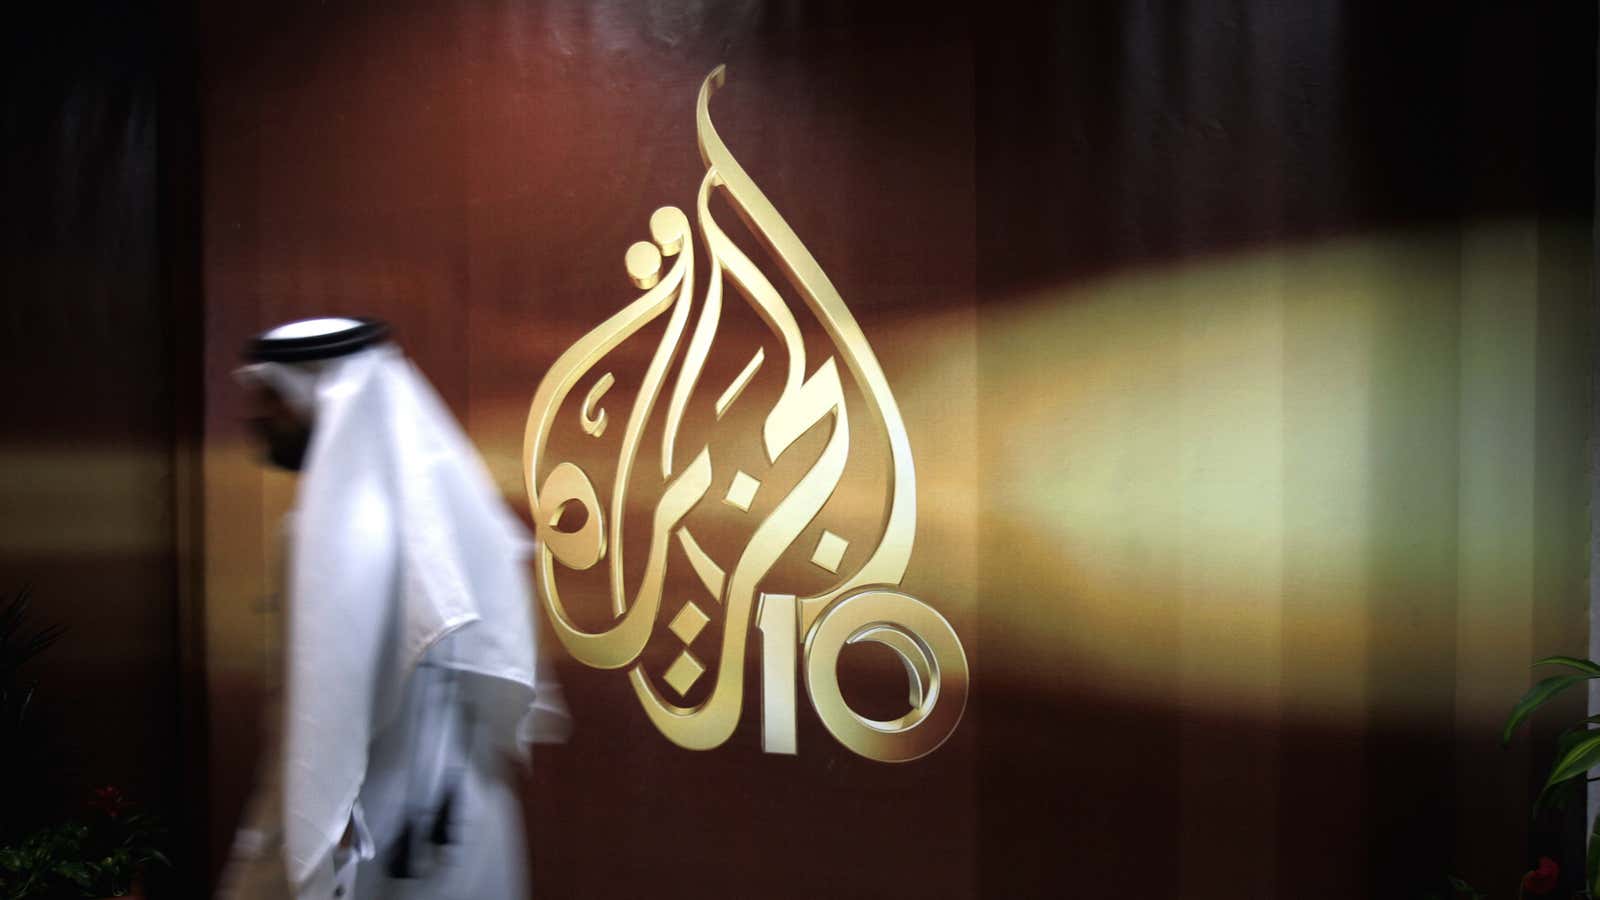 Al Jazeera’s offices in Doha, Qatar.